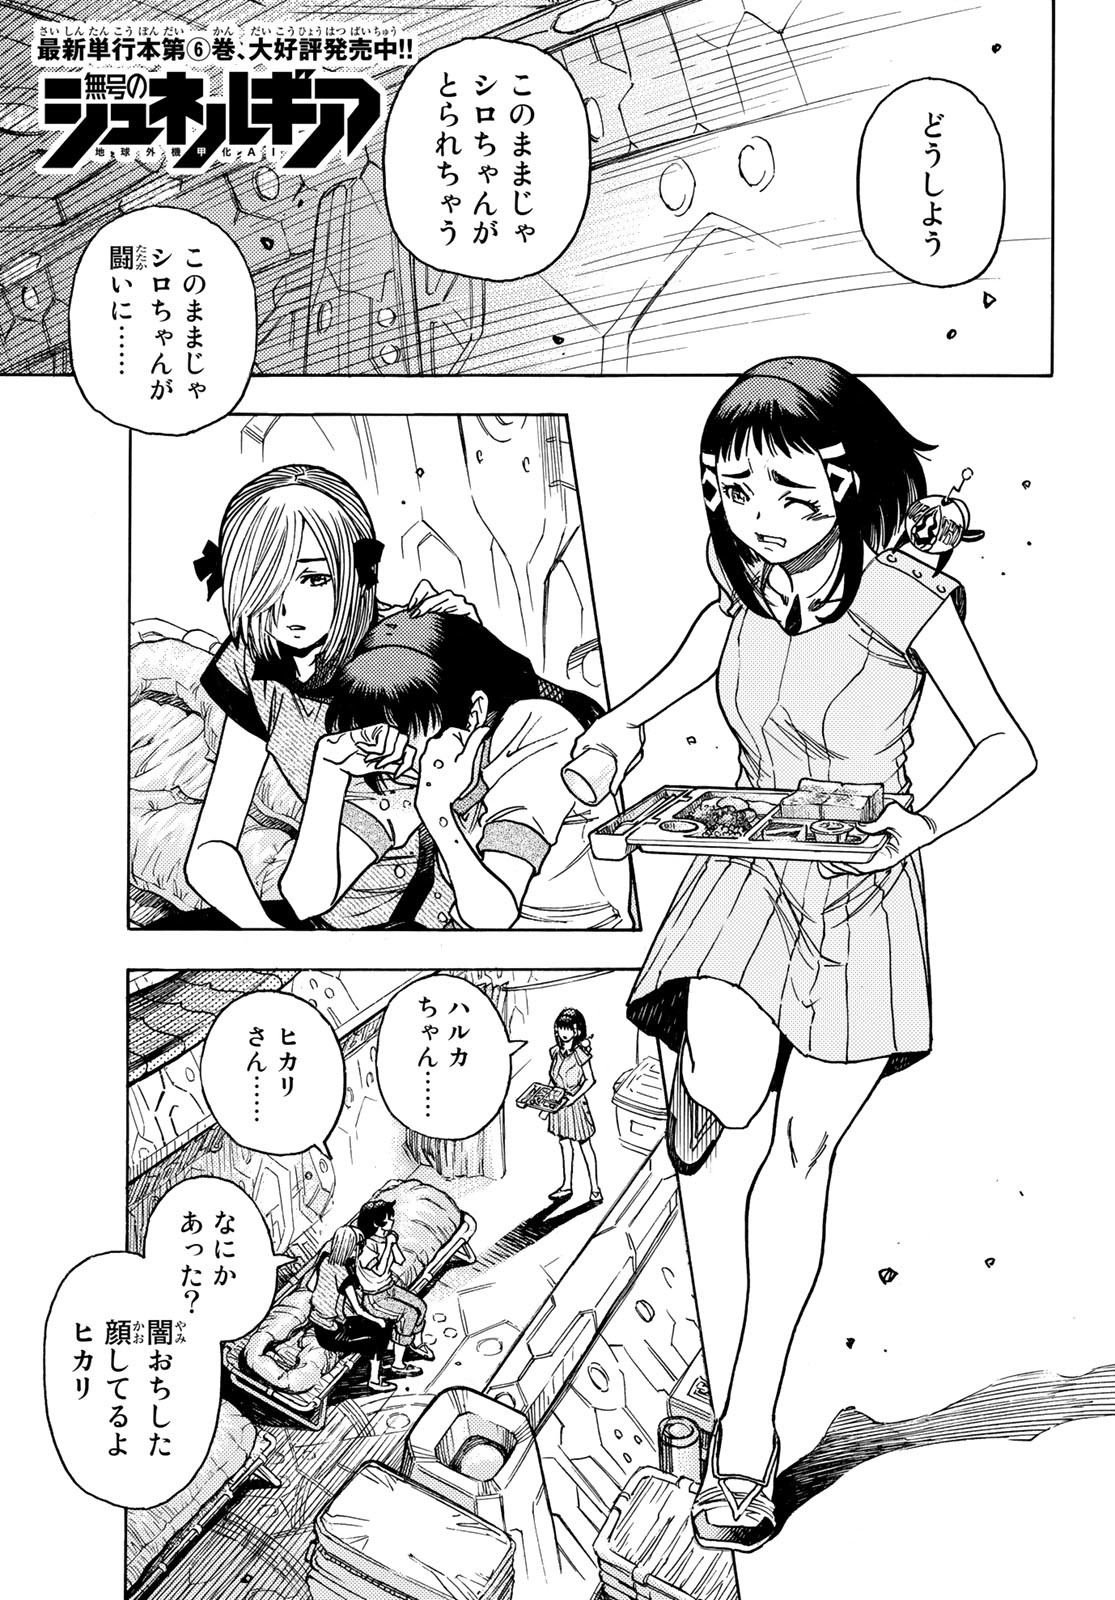 Mugou no Schnell Gear: Chikyuugai Kisouka AI - Chapter 44 - Page 1